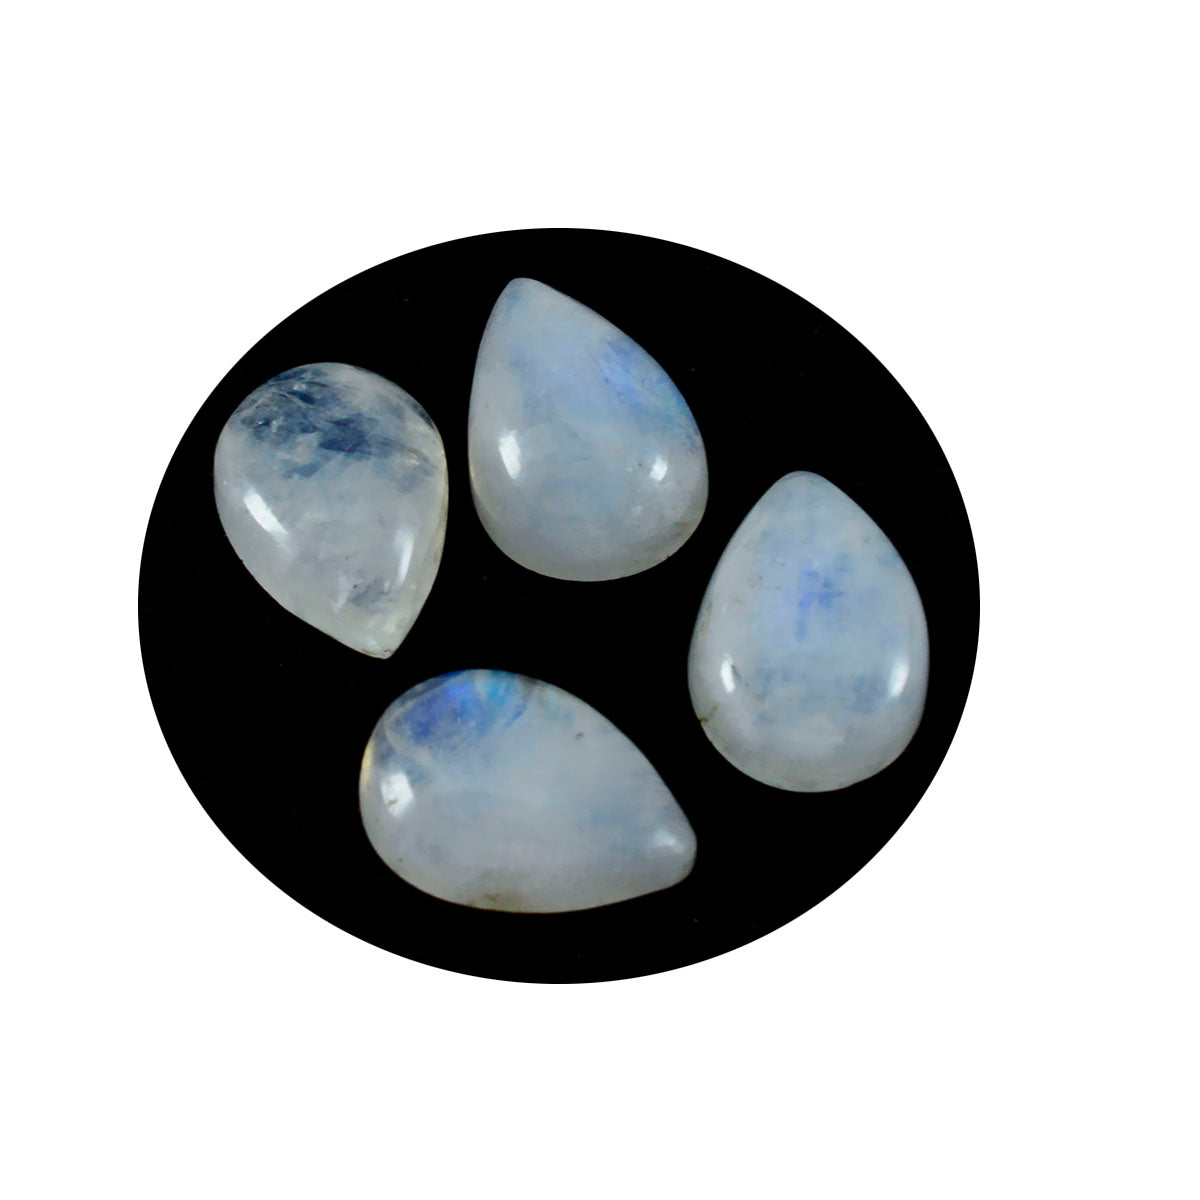 riyogems 1 шт. белый радужный лунный камень кабошон 10x14 мм грушевидной формы красивый качественный драгоценный камень